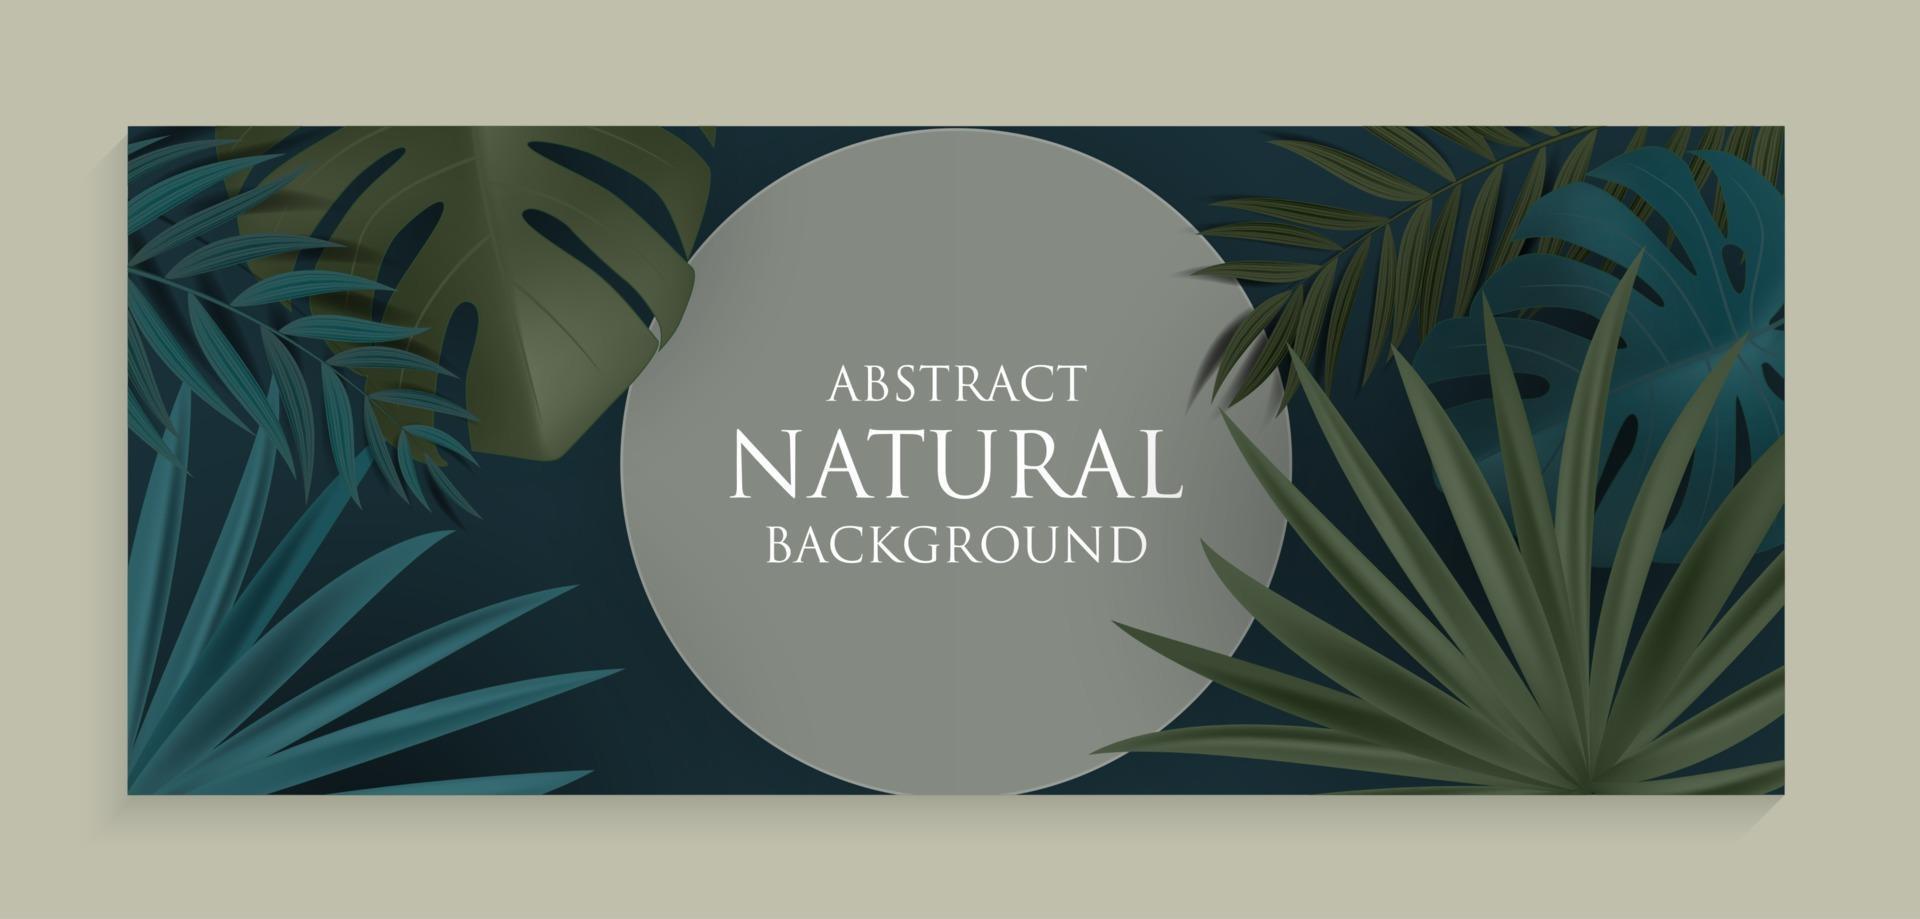 Fondo natural abstracto con palmeras tropicales y hojas de monstera. ilustración vectorial eps10 vector